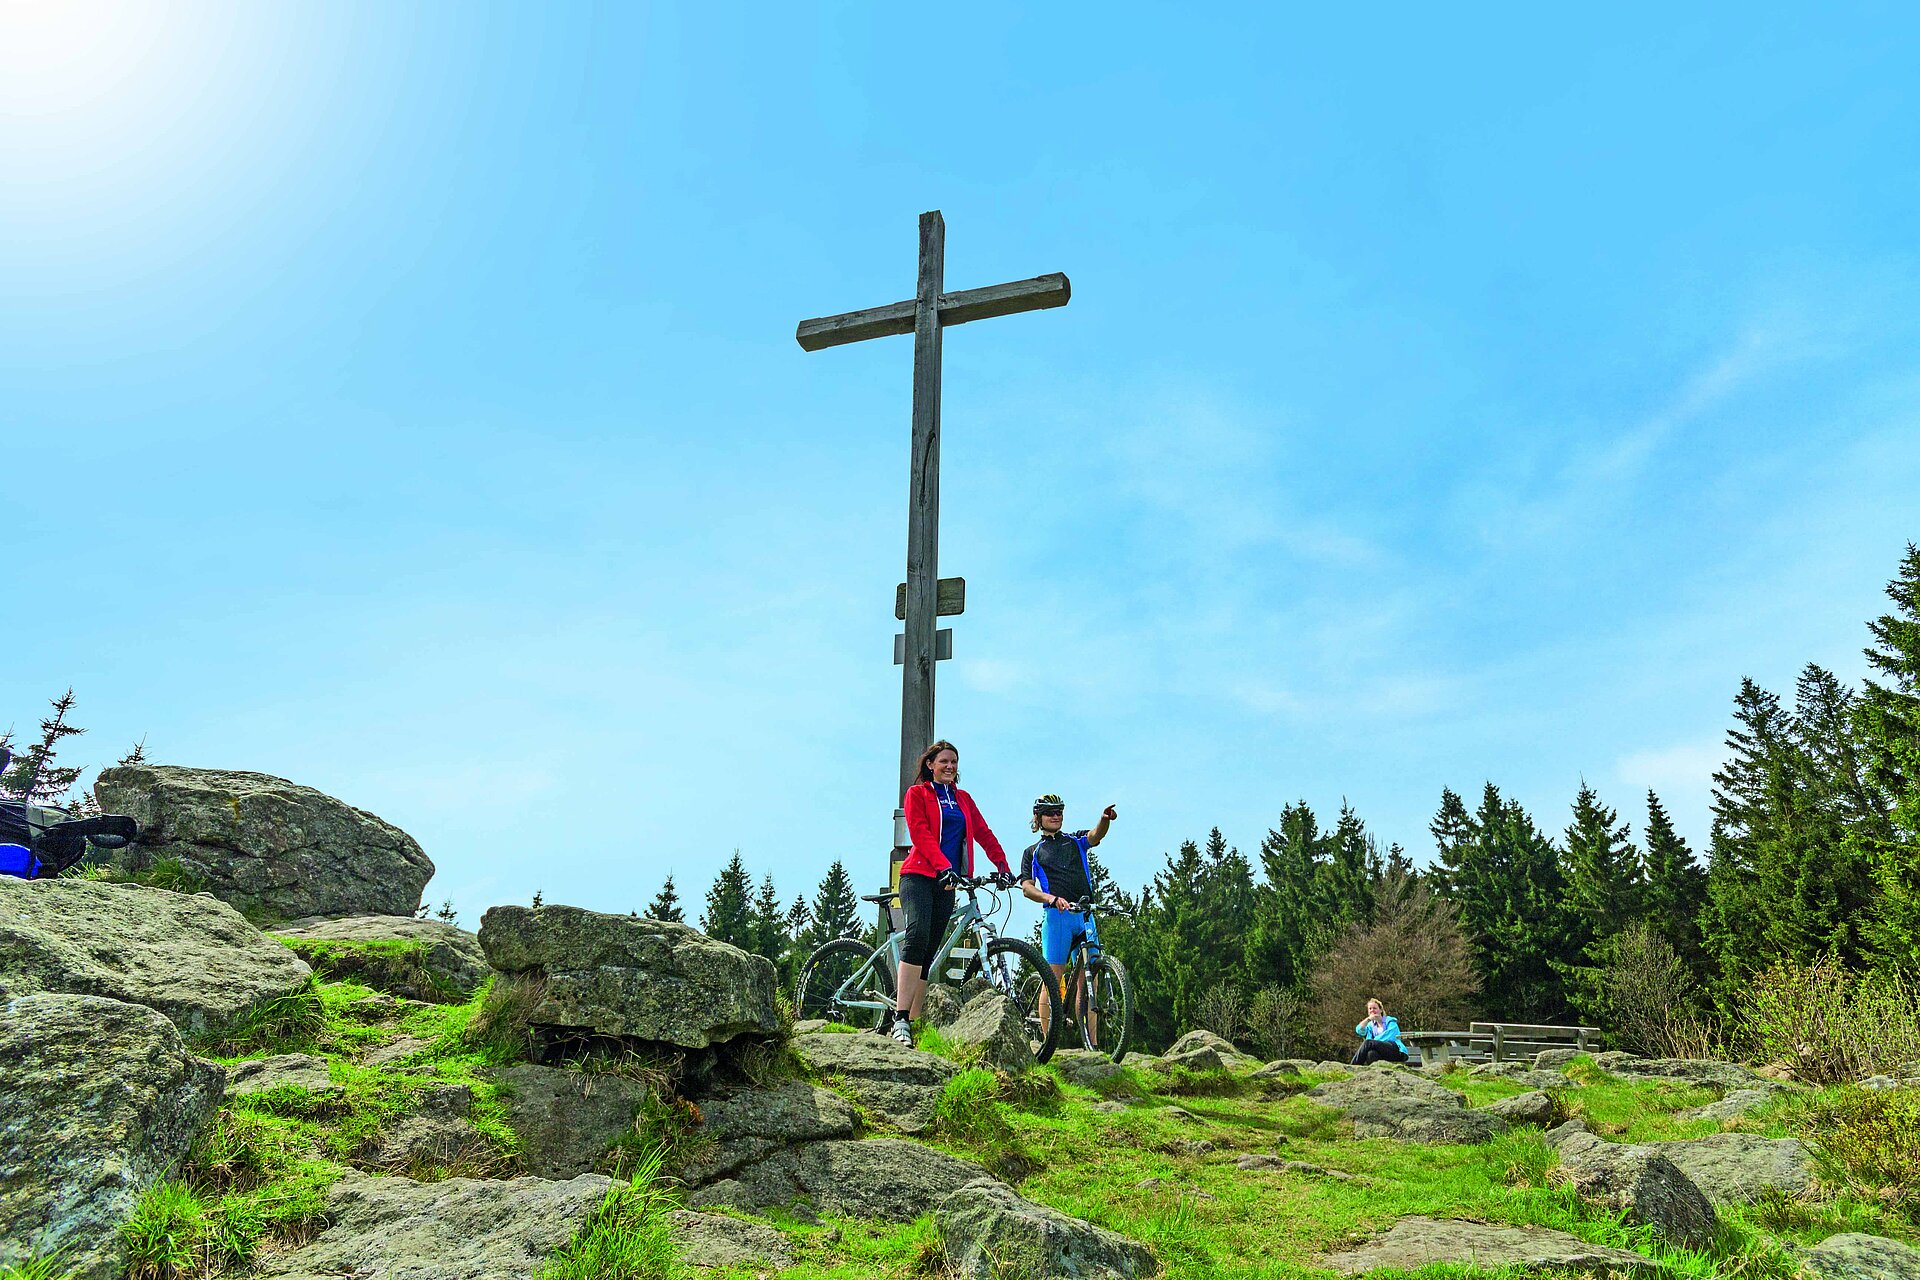 Ein junges Paar steht mit ihren Mountainbikes direkt am Gipfelkreuz des Pröllers. Der junge Mann zeigt in die Ferne. In der Nähe sitzt eine Frau auf einer Bank und genießt Wald und Sicht. Über allem ein blauer Himmel.